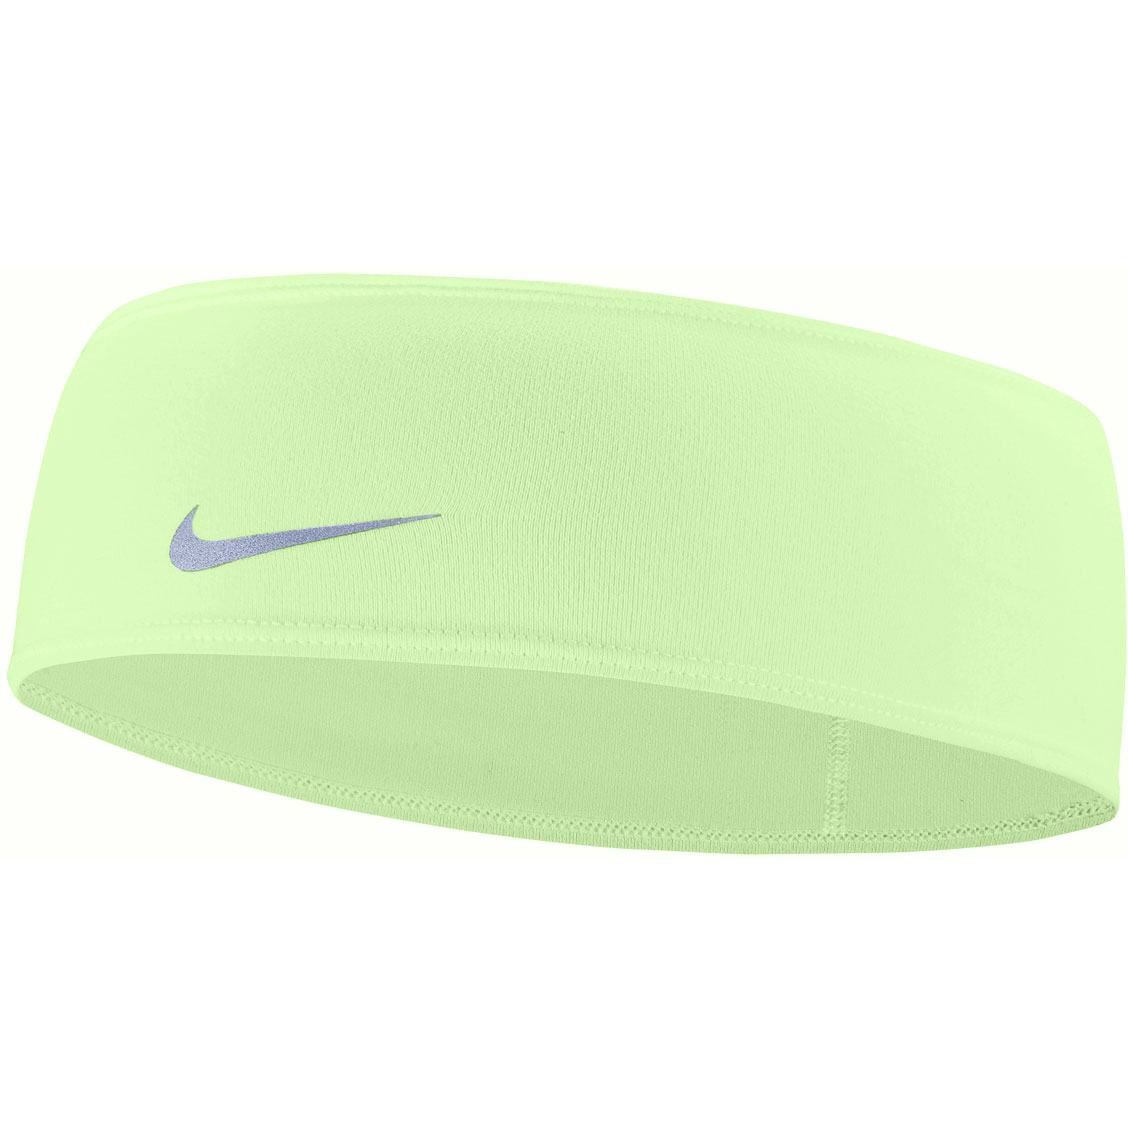 Produktbild von Nike Dri-Fit Swoosh Stirnband 2.0 - vapor green/silver 323